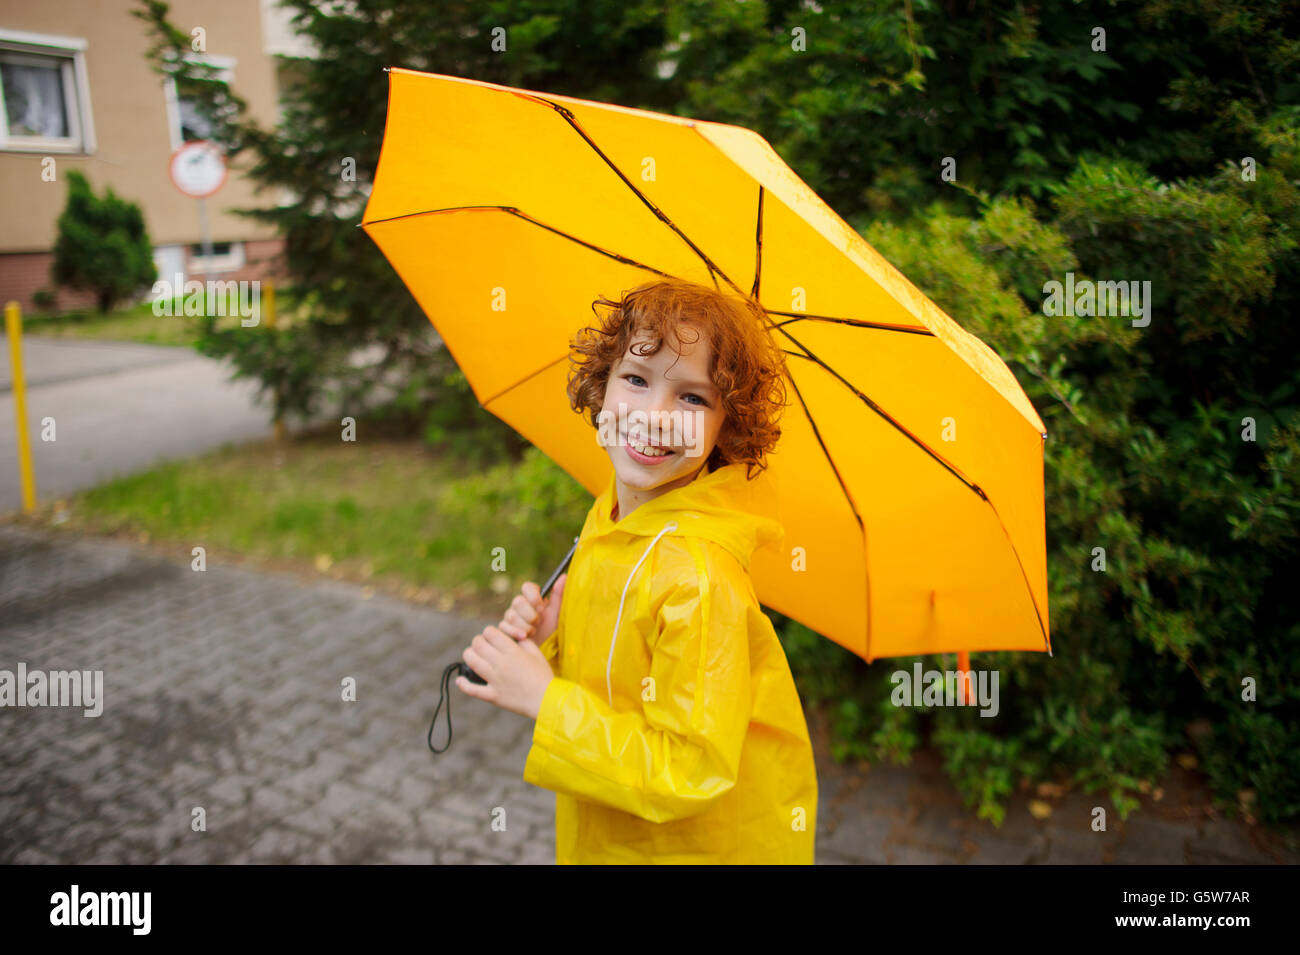 Alegre niño de 8-9 años bajo un paraguas amarillo. niño con una sonrisa busca en la cámara. Tiene el pelo rizado y húmedo una NIC Fotografía de stock -